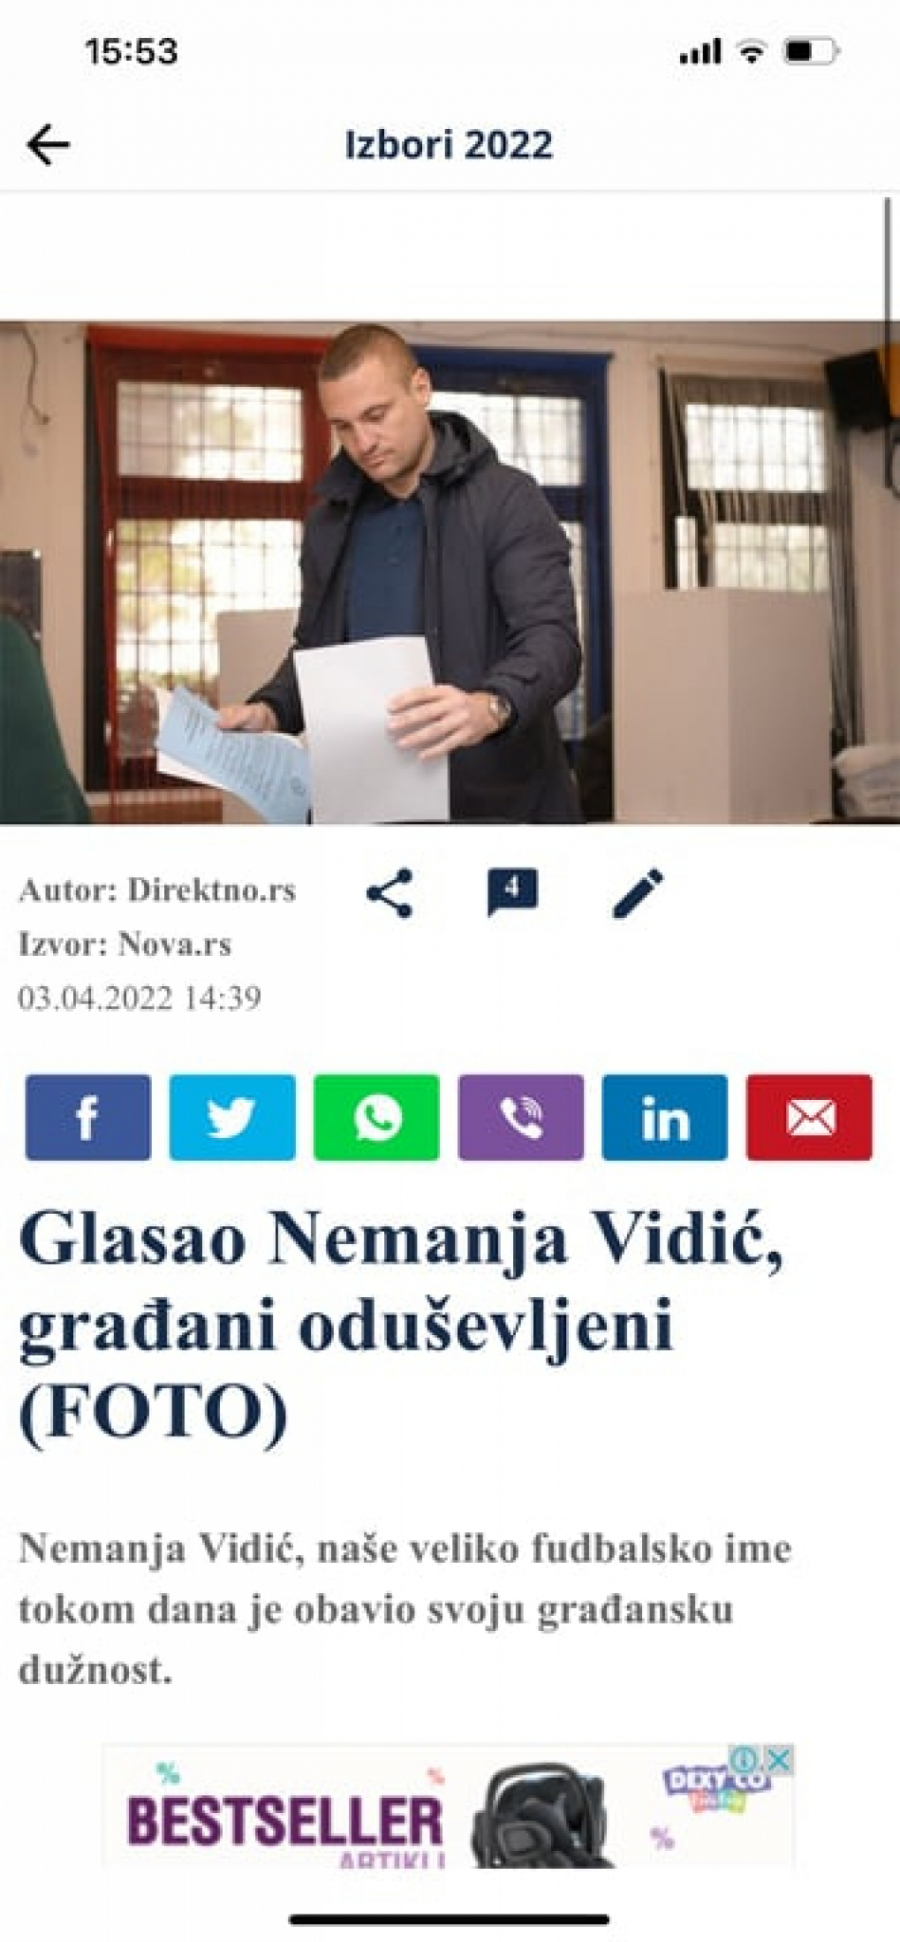 ĐILASOVCI KRŠE ZAKON Među njima i slavni fudbaler Vidić: Snimaju glasanje i pokazuju listiće! (FOTO/VIDEO)